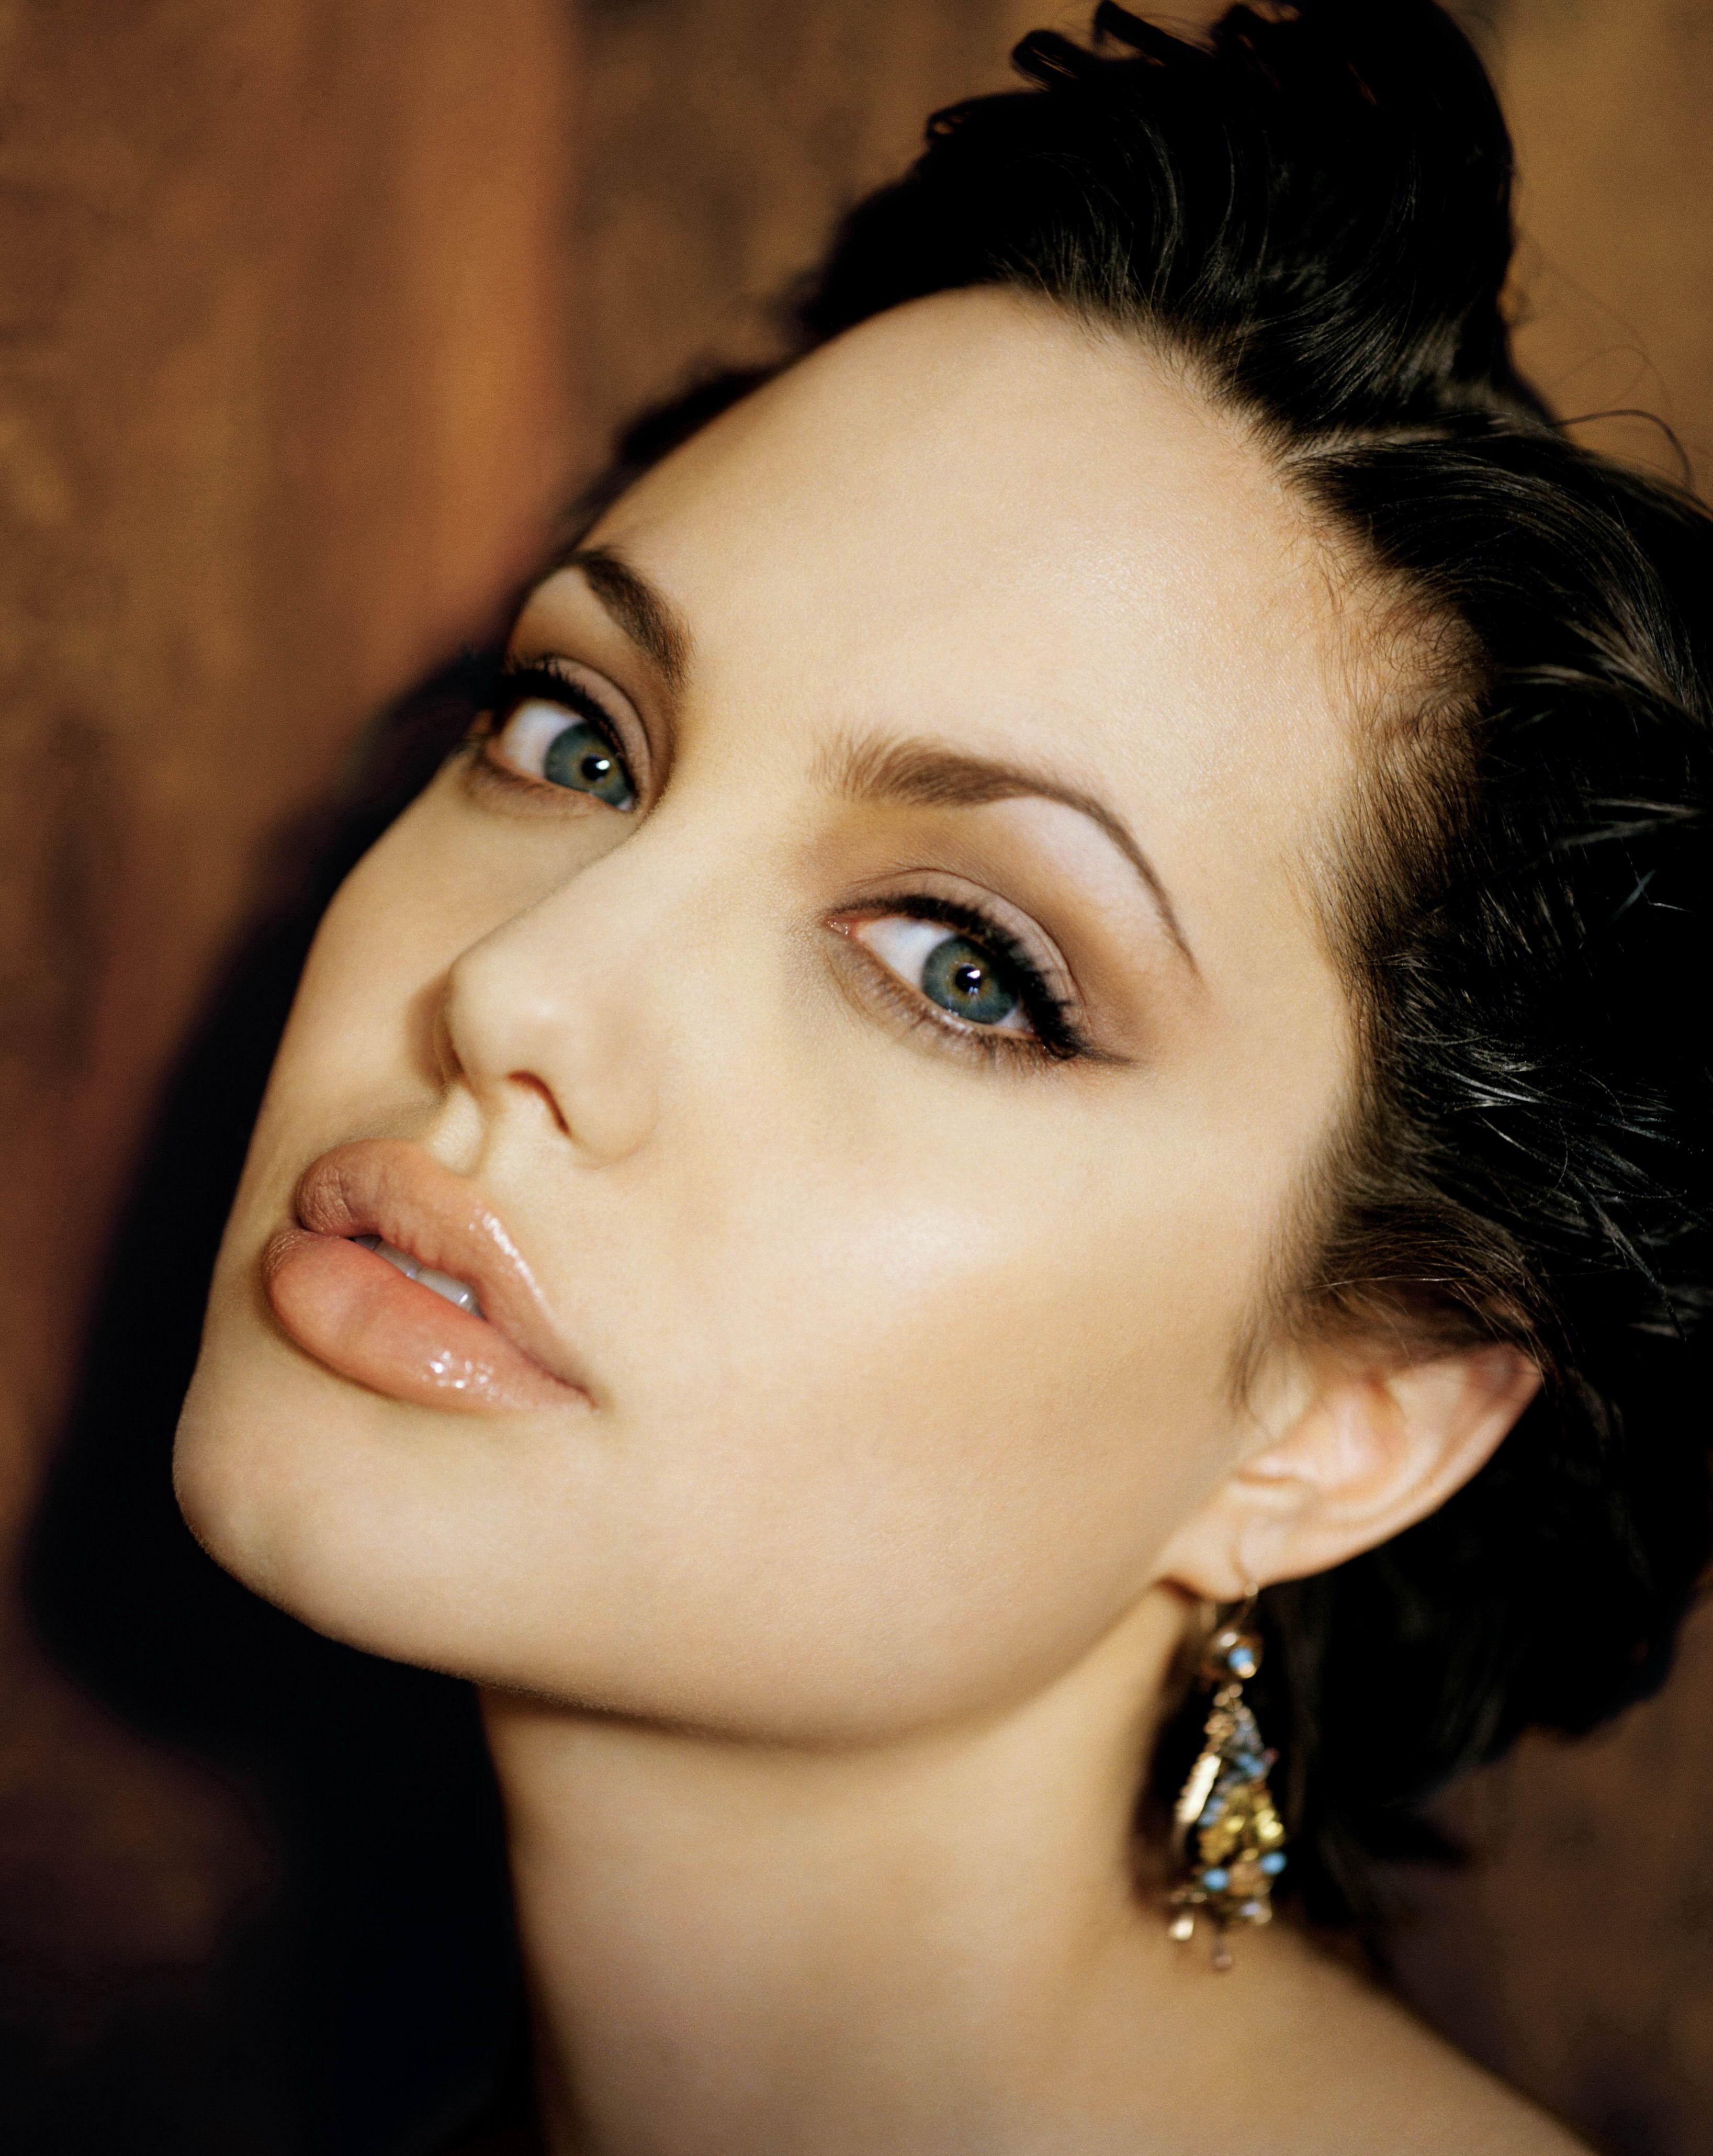 Angelina Jolie wallpaper №7625.